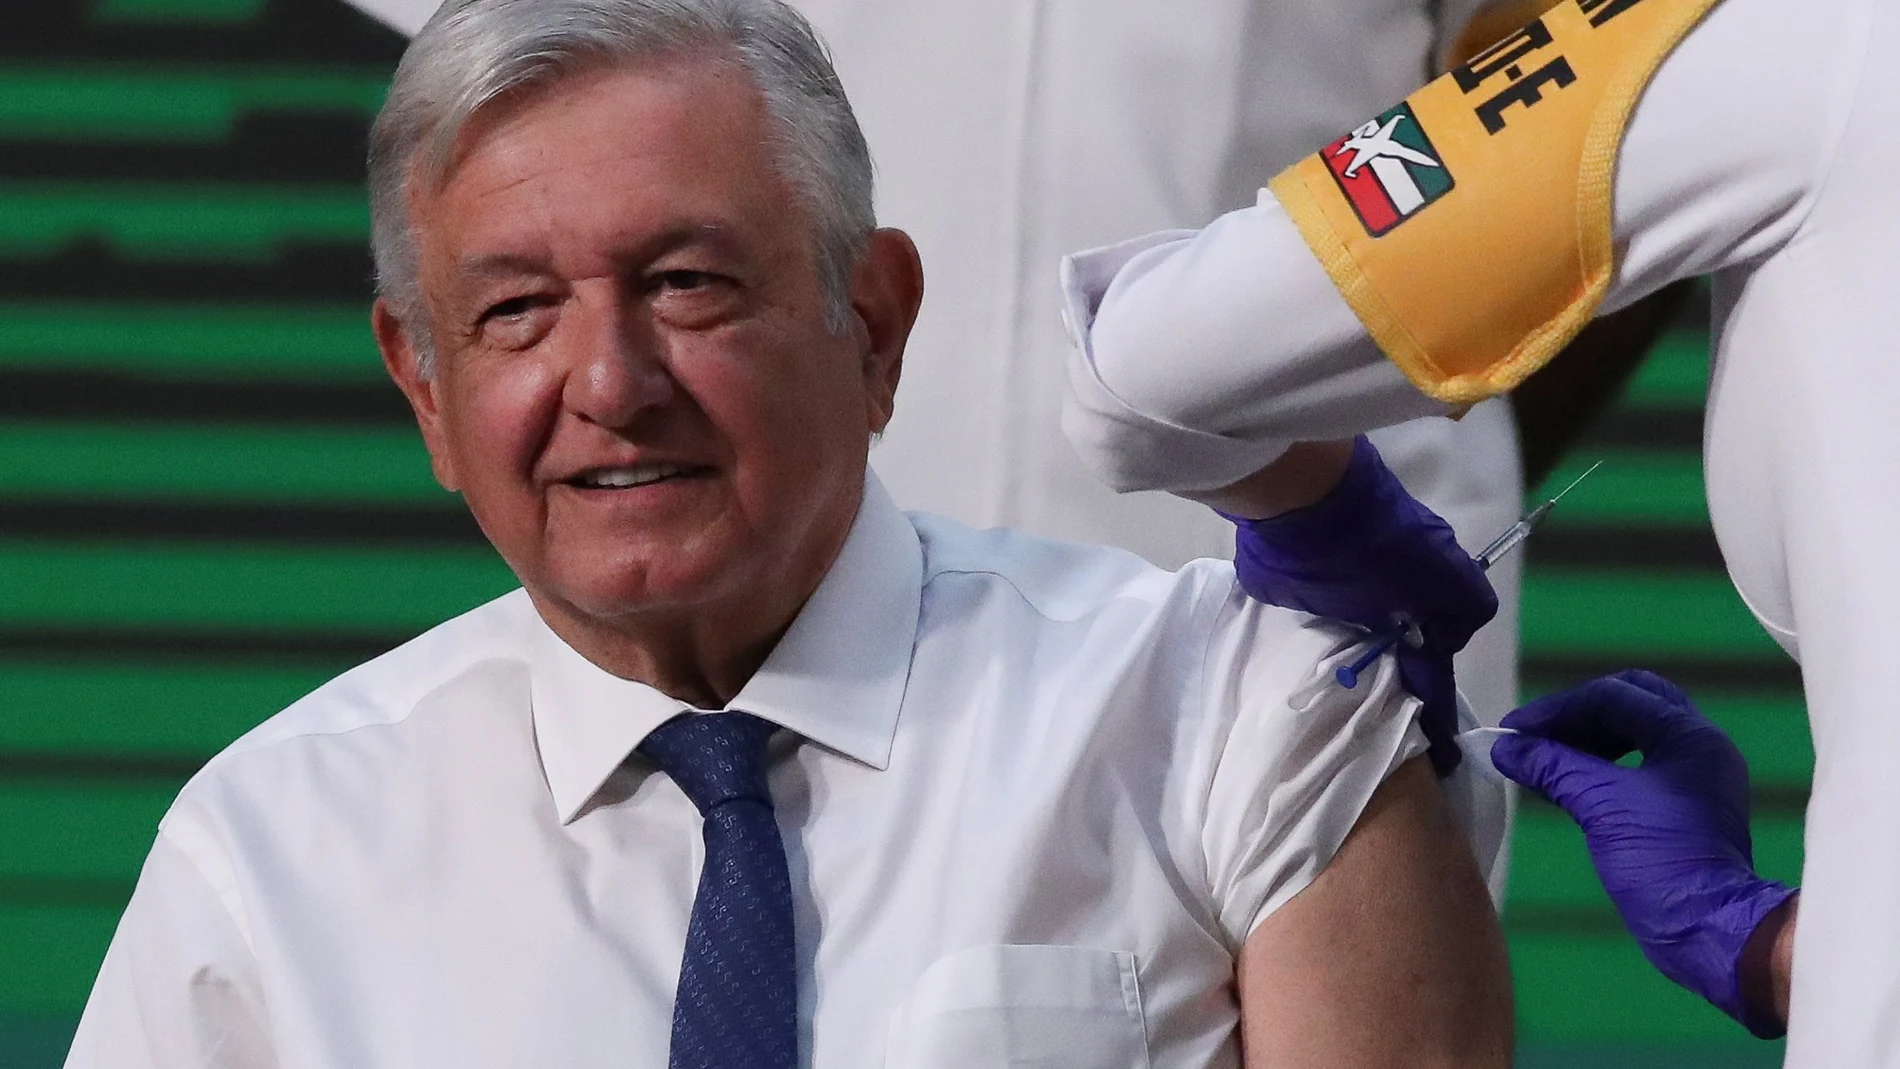 López Obrador recibió este martes la primera dosis de la vacuna de AstraZeneca